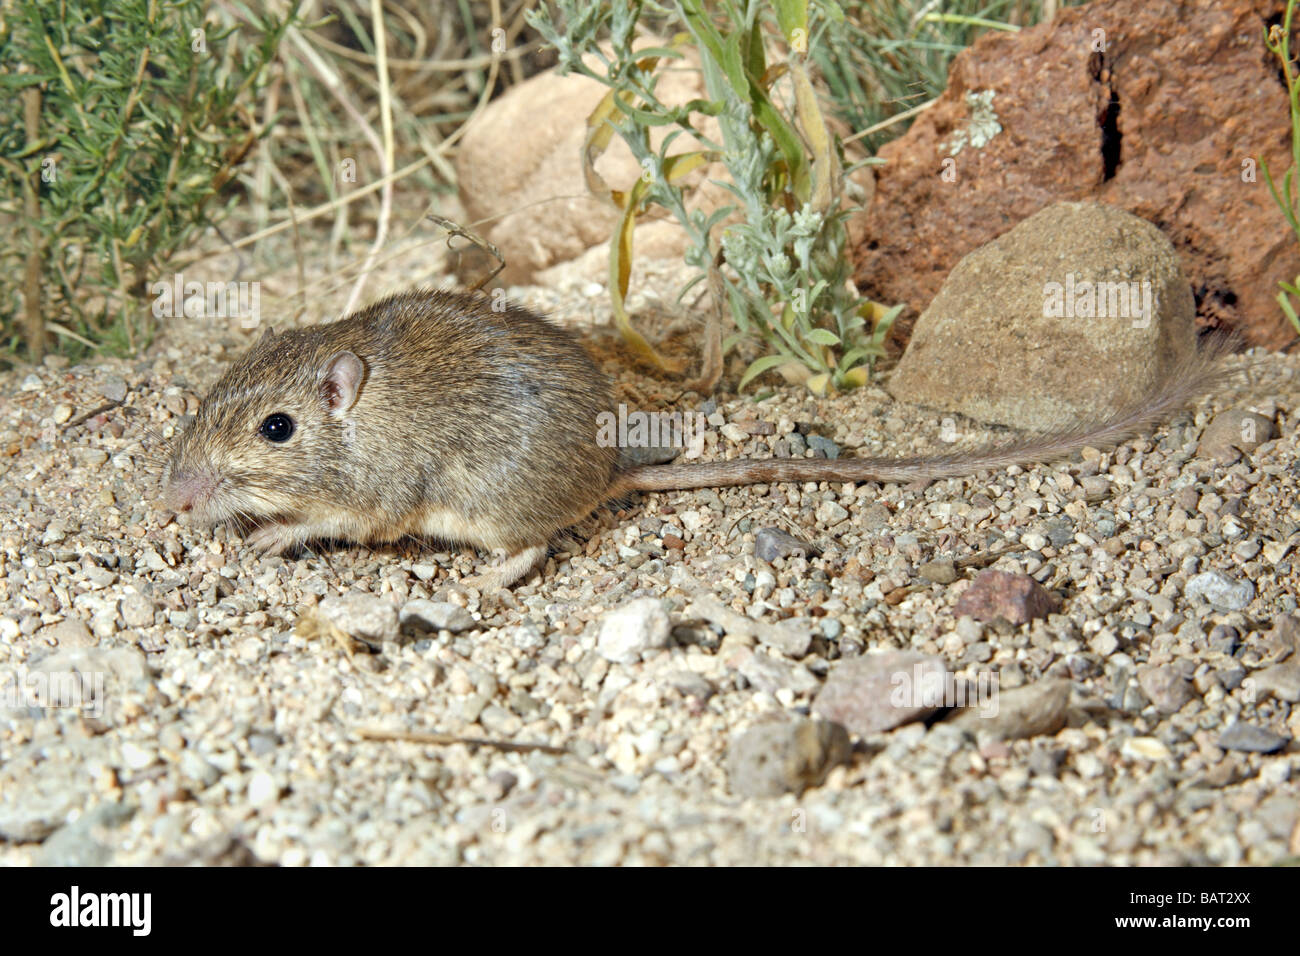 Wüste Tasche Maus sucht nach Samen in Wüste Kies. Stockfoto